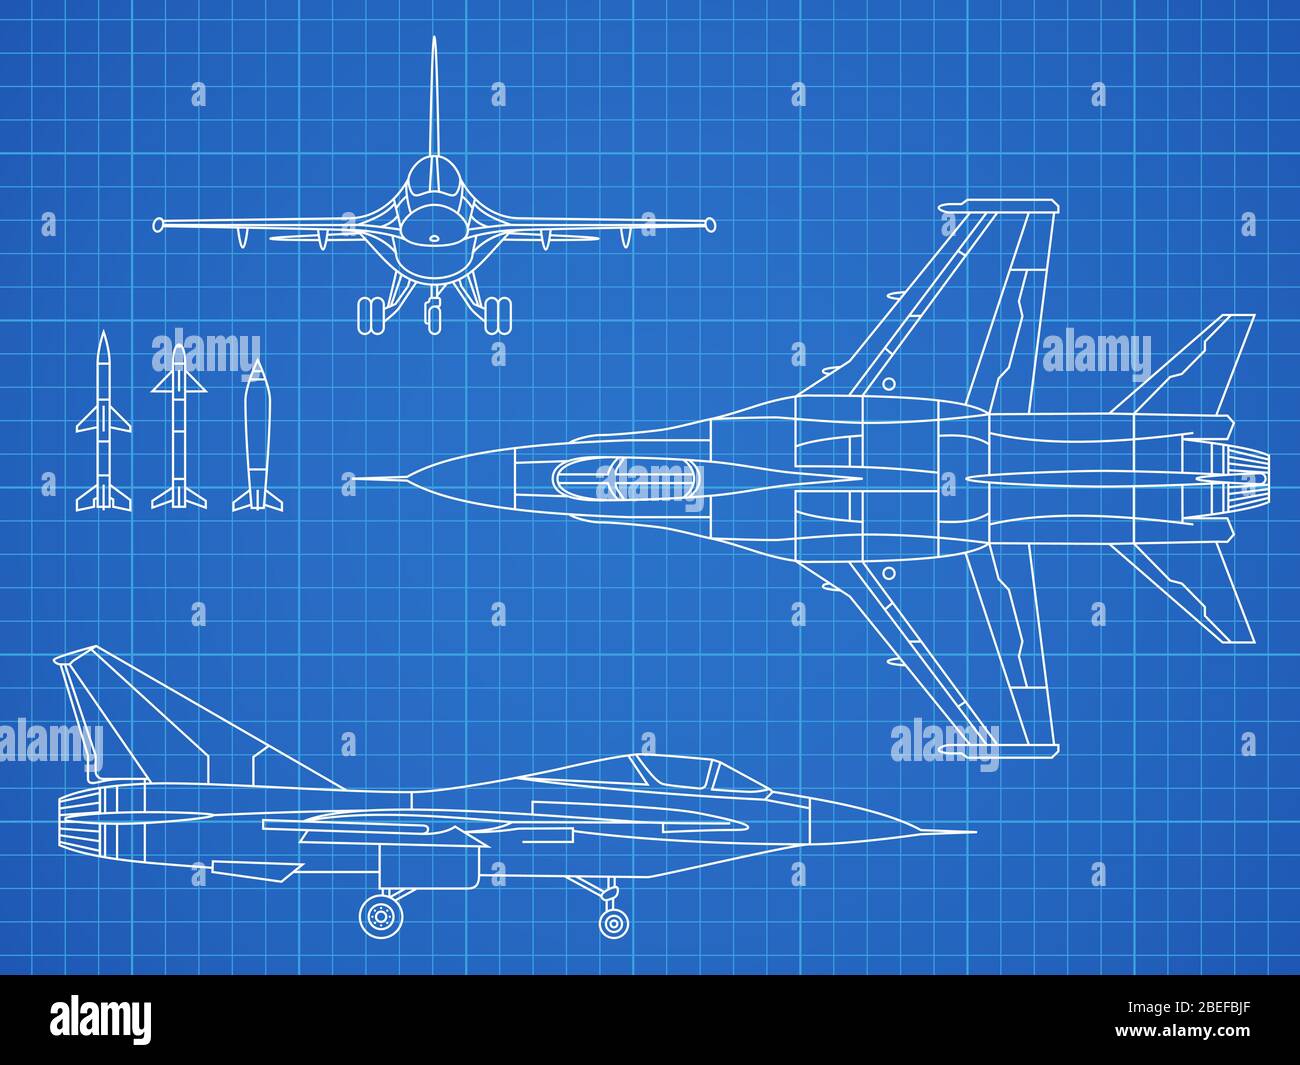 Aerei militari a reazione disegno vettoriale progetto. Illustrazione del piano militare degli aeromobili Illustrazione Vettoriale